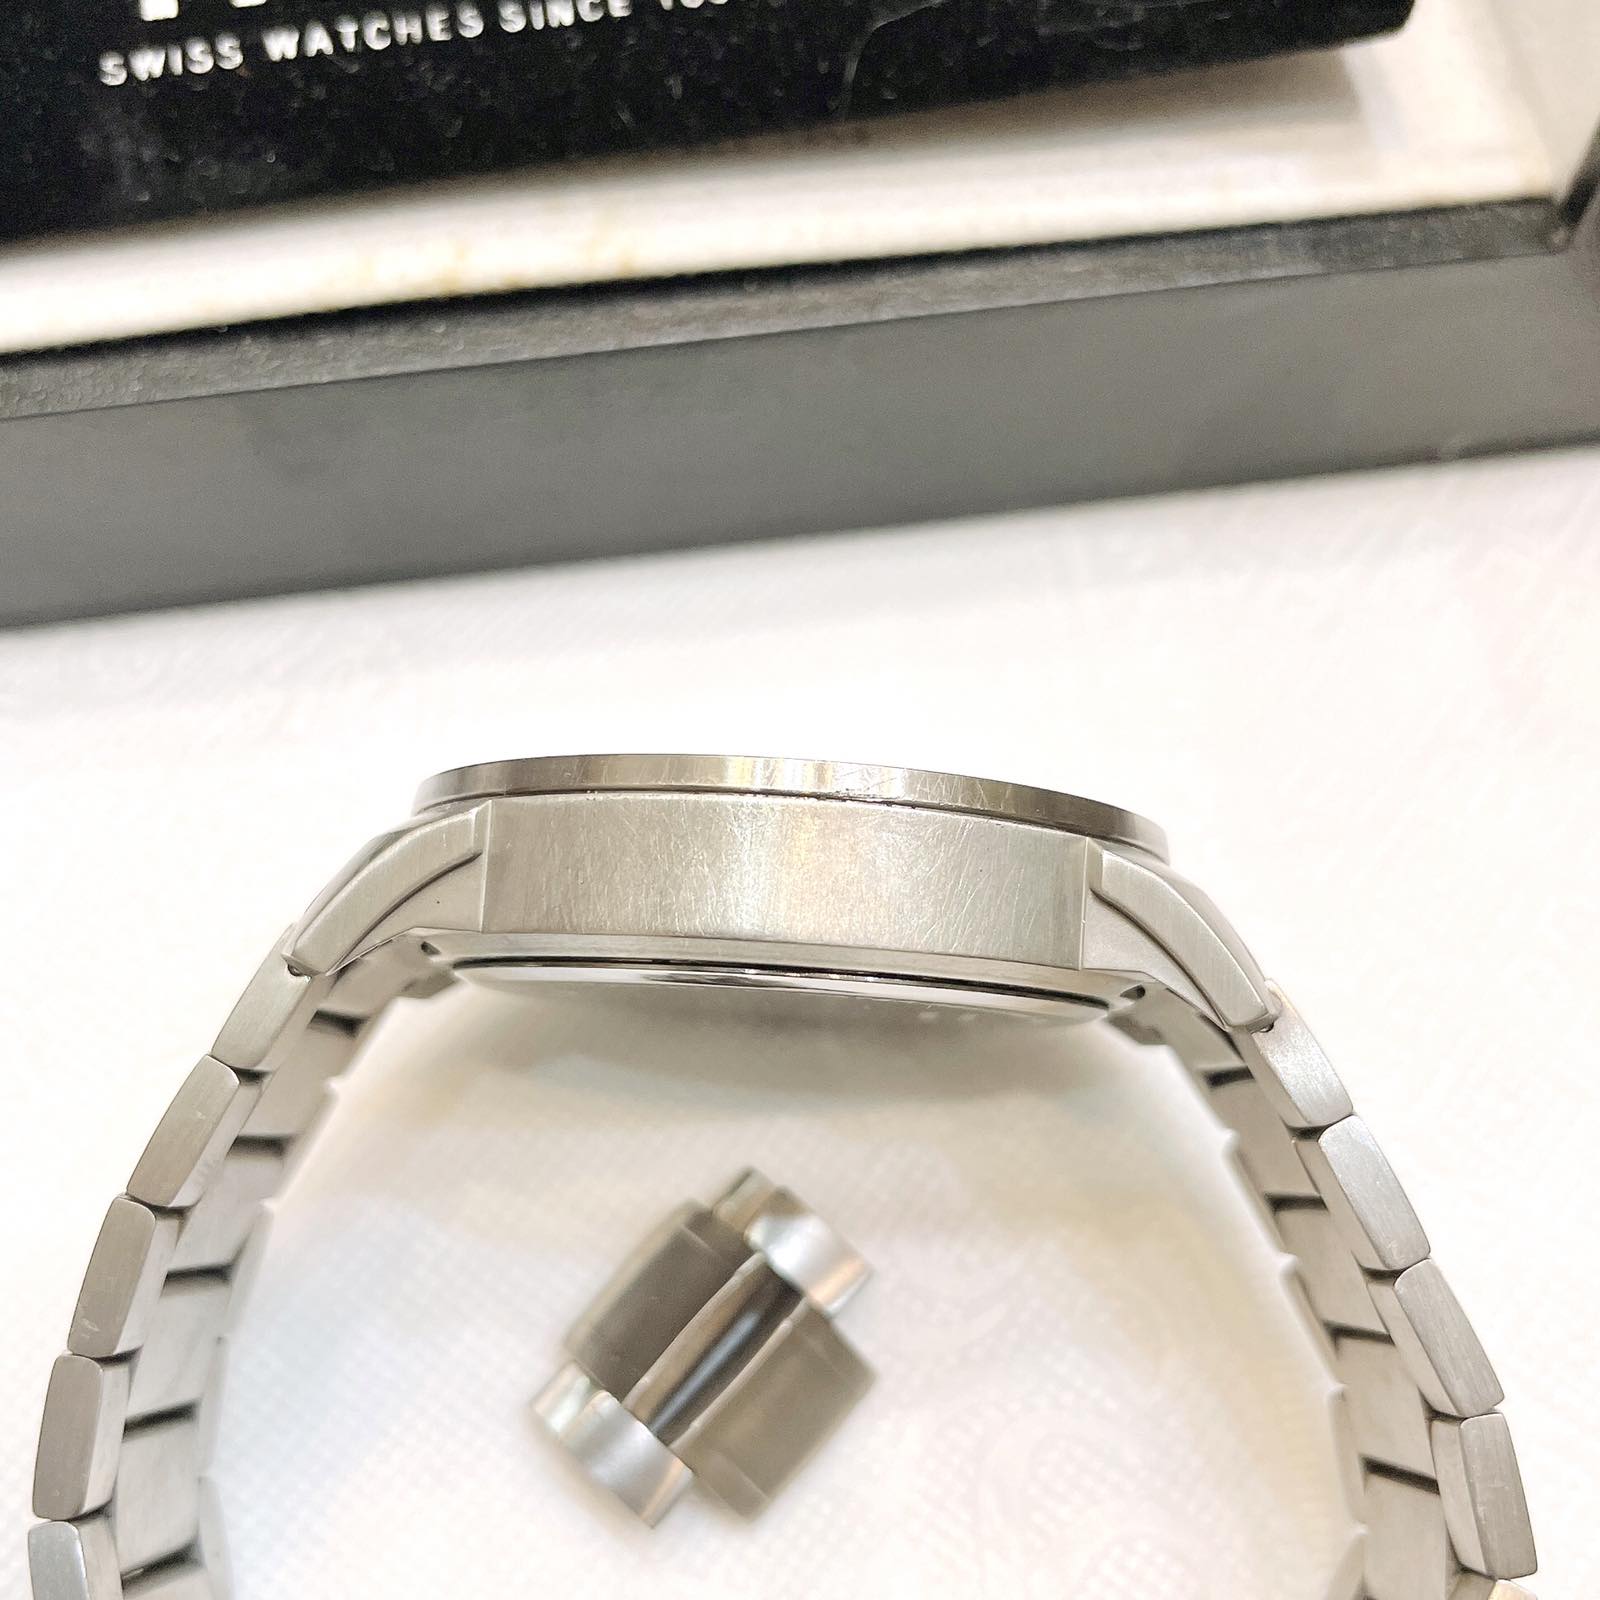 Đồng hồ Tissot Titanium T069.417.031.00 chính hãng Thụy Sĩ 